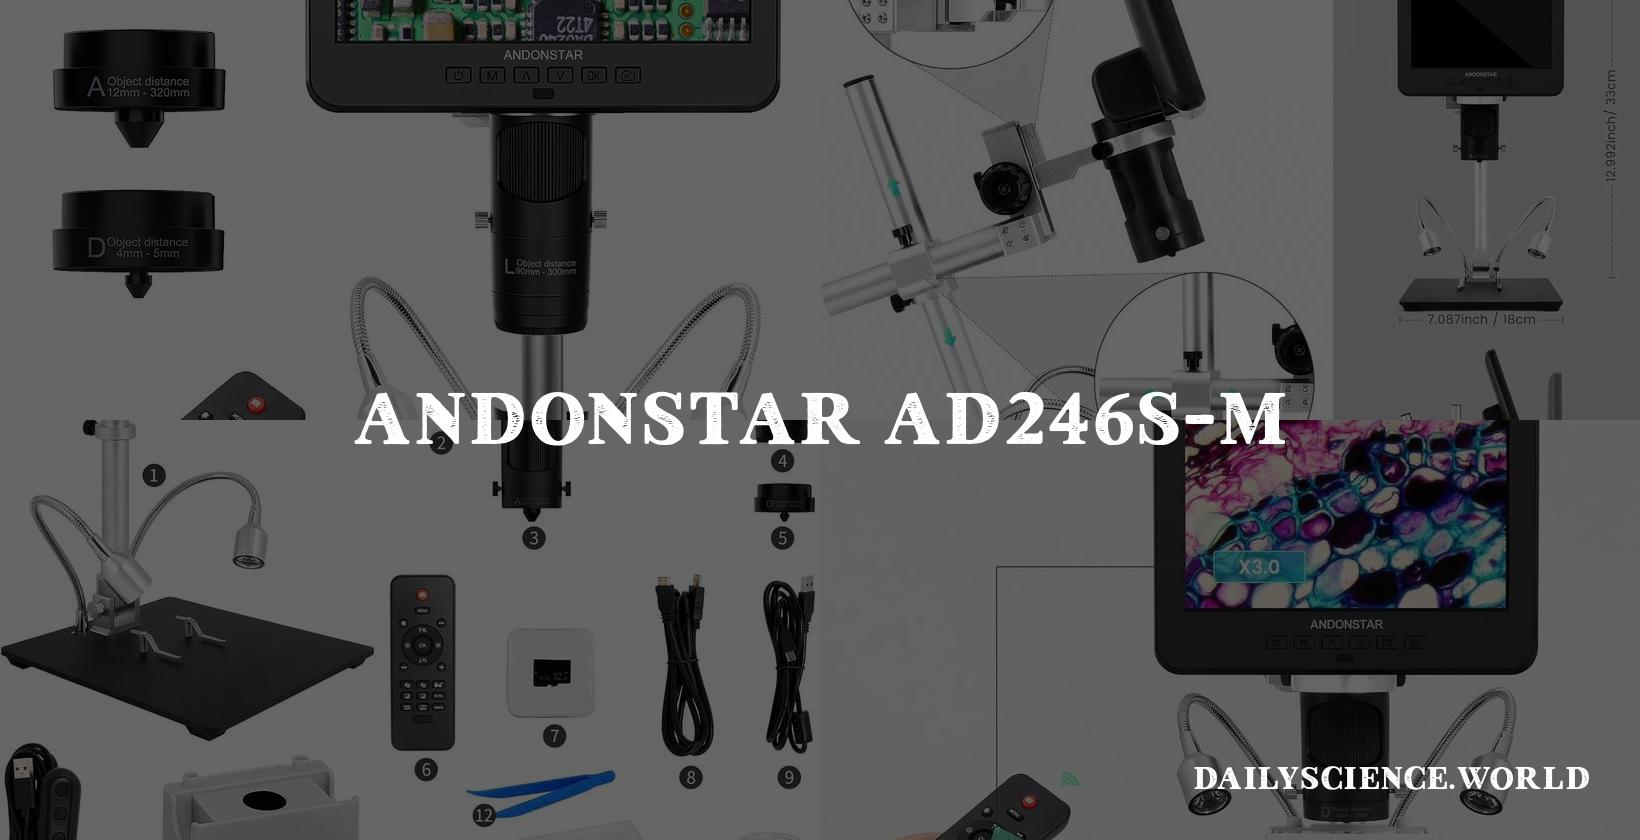 Andonstar AD246S-M HDMI Digital Microscope